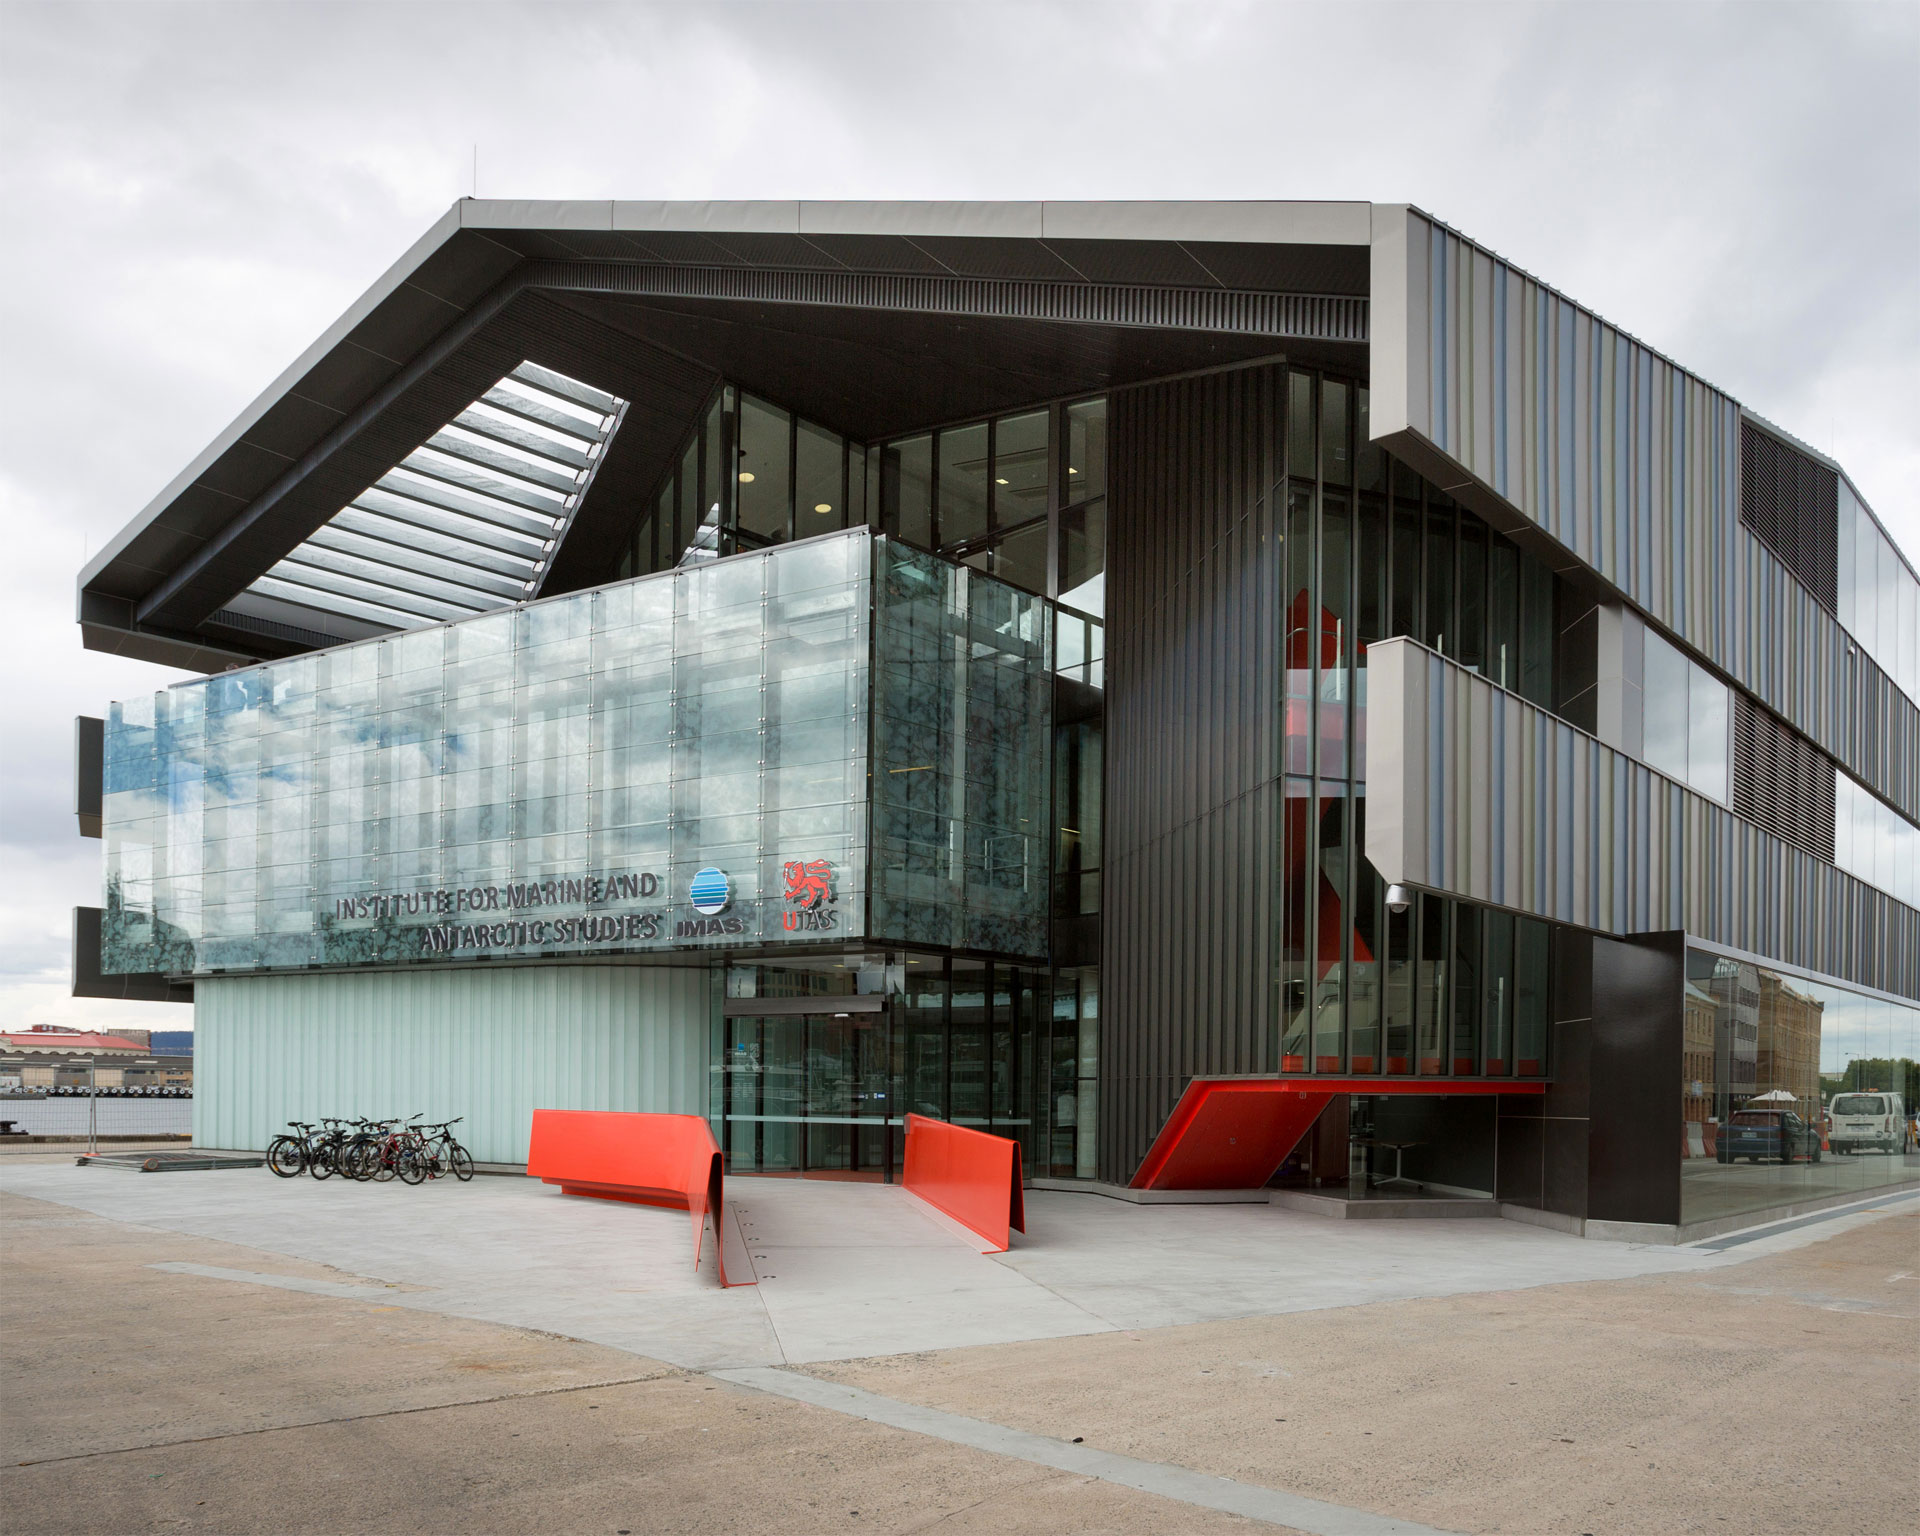 Ein modernes Gebäude mit Glas- und Metallelementen, roten Bänken davor und einer Reihe geparkter Fahrräder